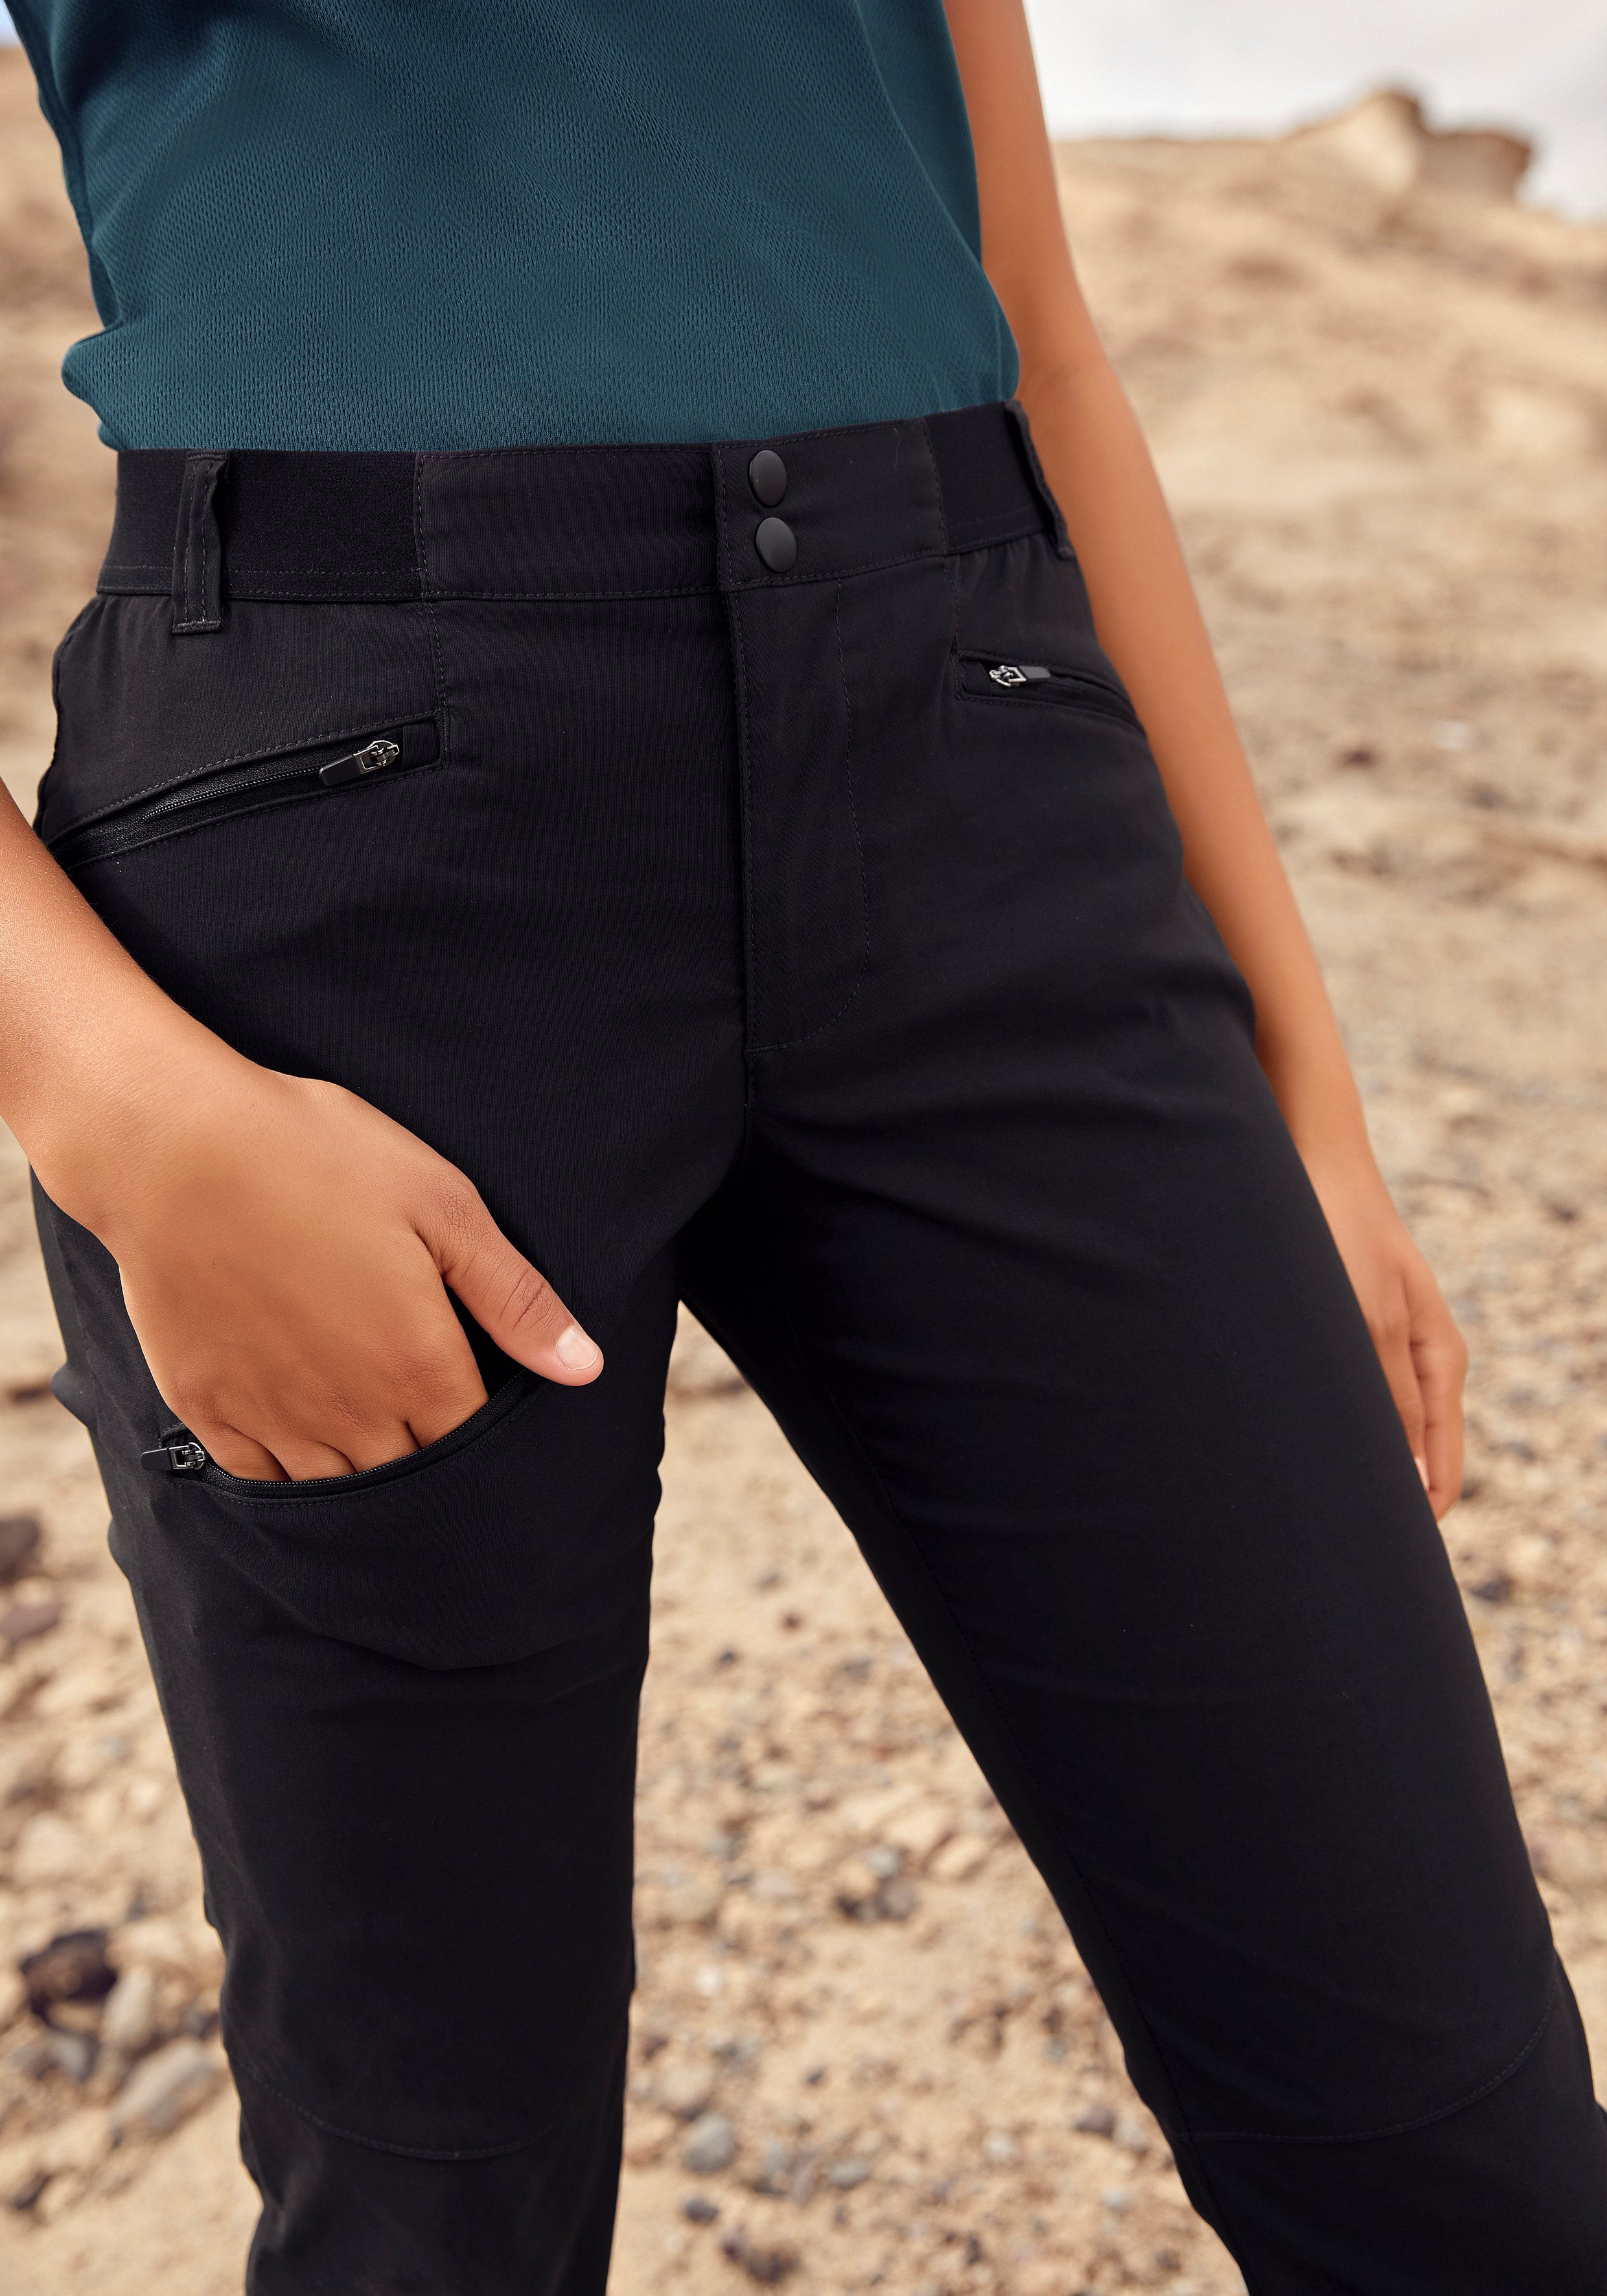 ACTIVE LASCANA 3 schwarz Trekkinghose mit Zipper Taschen